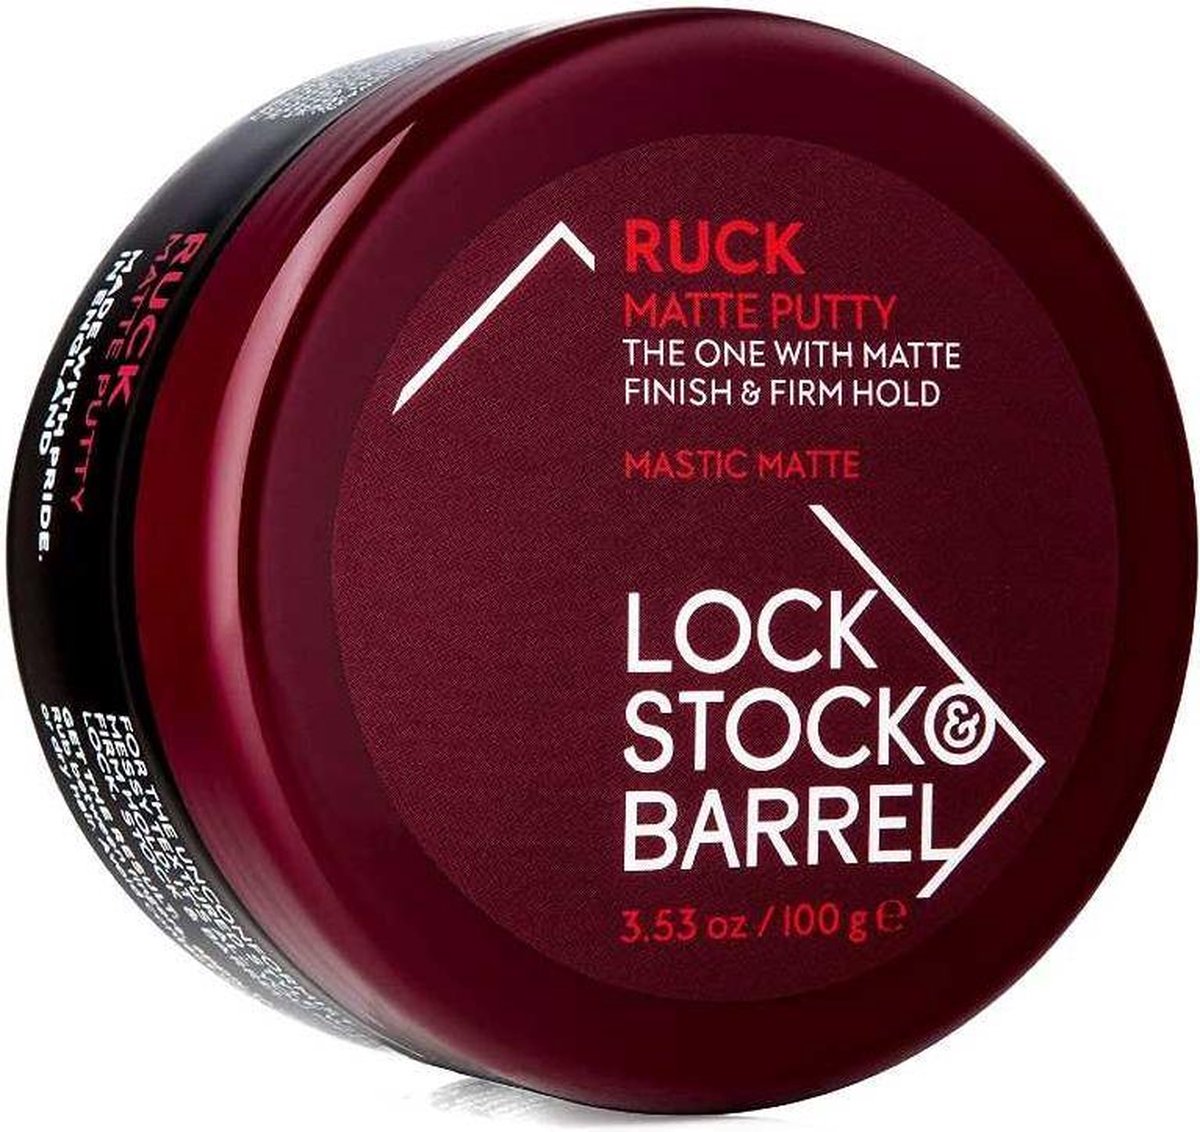 Lock Stock & Barrel Ruck Matte Putty 100 gr